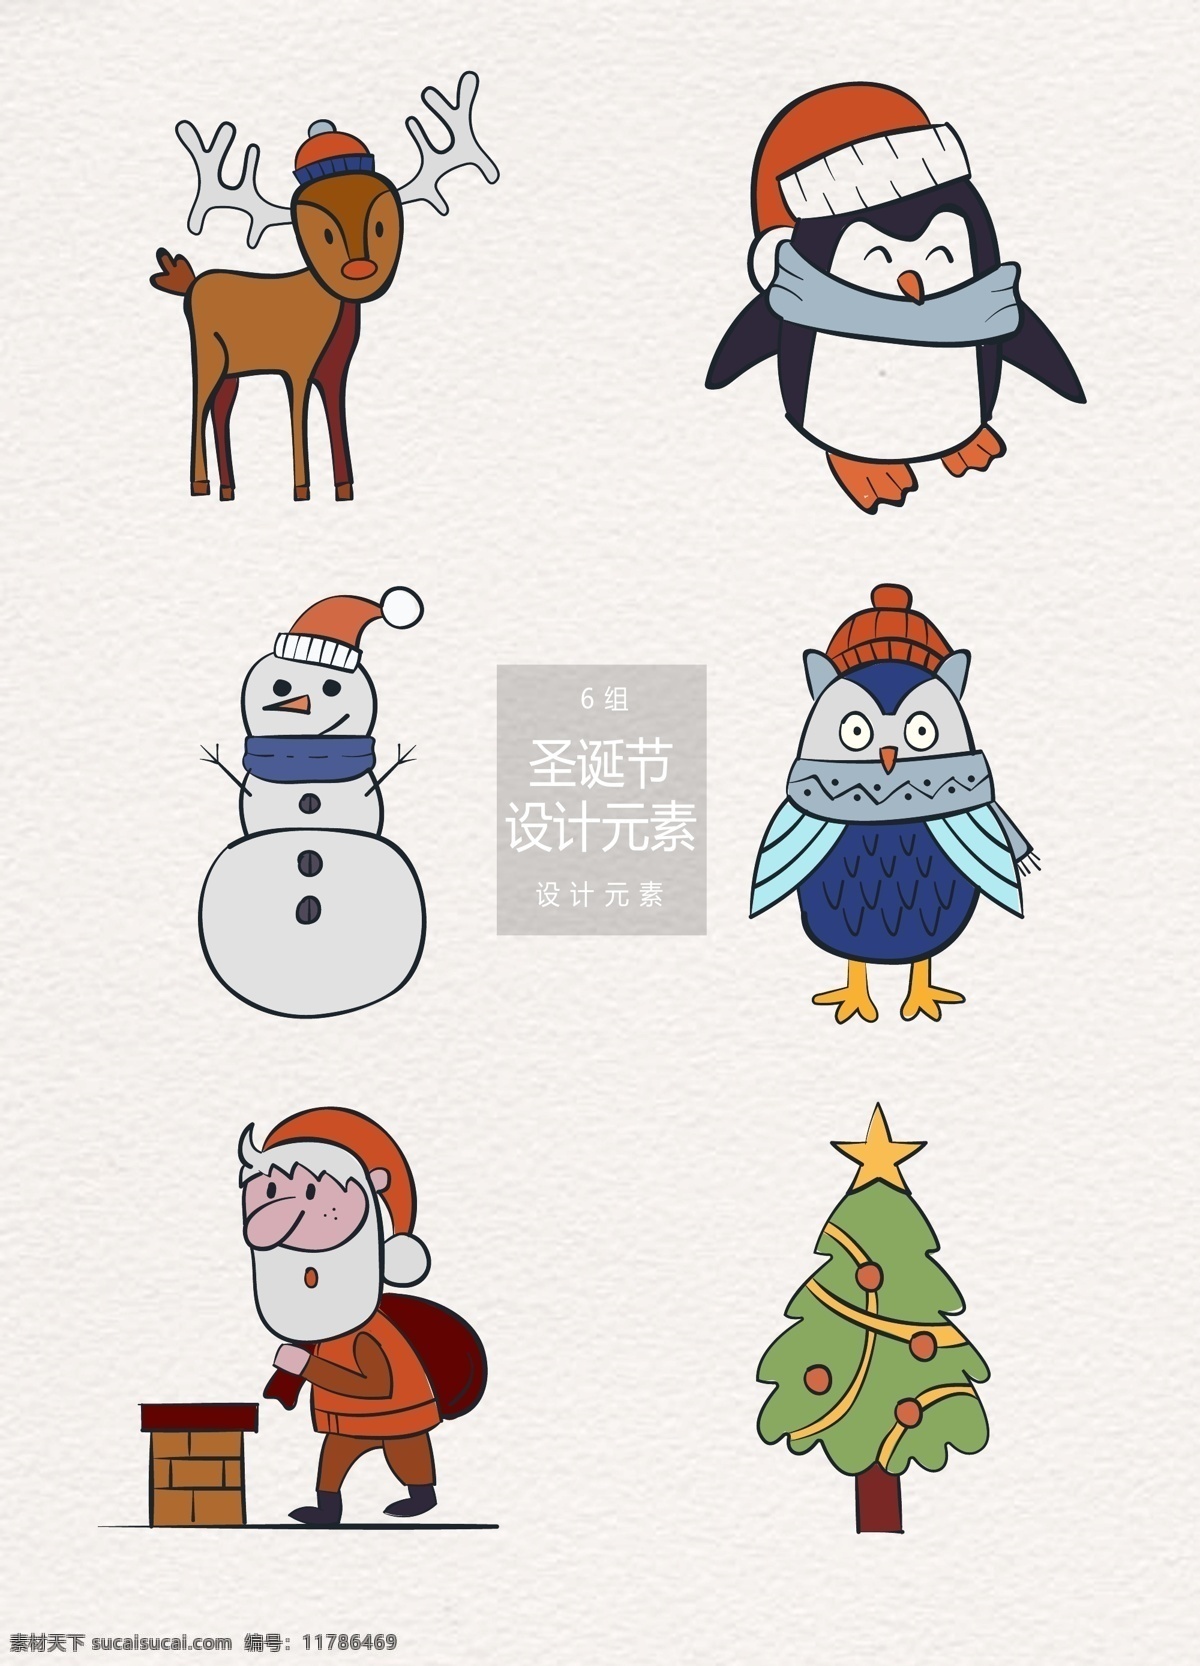 手绘 圣诞节 装饰 图案 元素 设计元素 猫头鹰 圣诞树 圣诞老人 手绘元素 装饰图案 圣诞节元素 圣诞 圣诞元素 企鹅 雪人 麋鹿